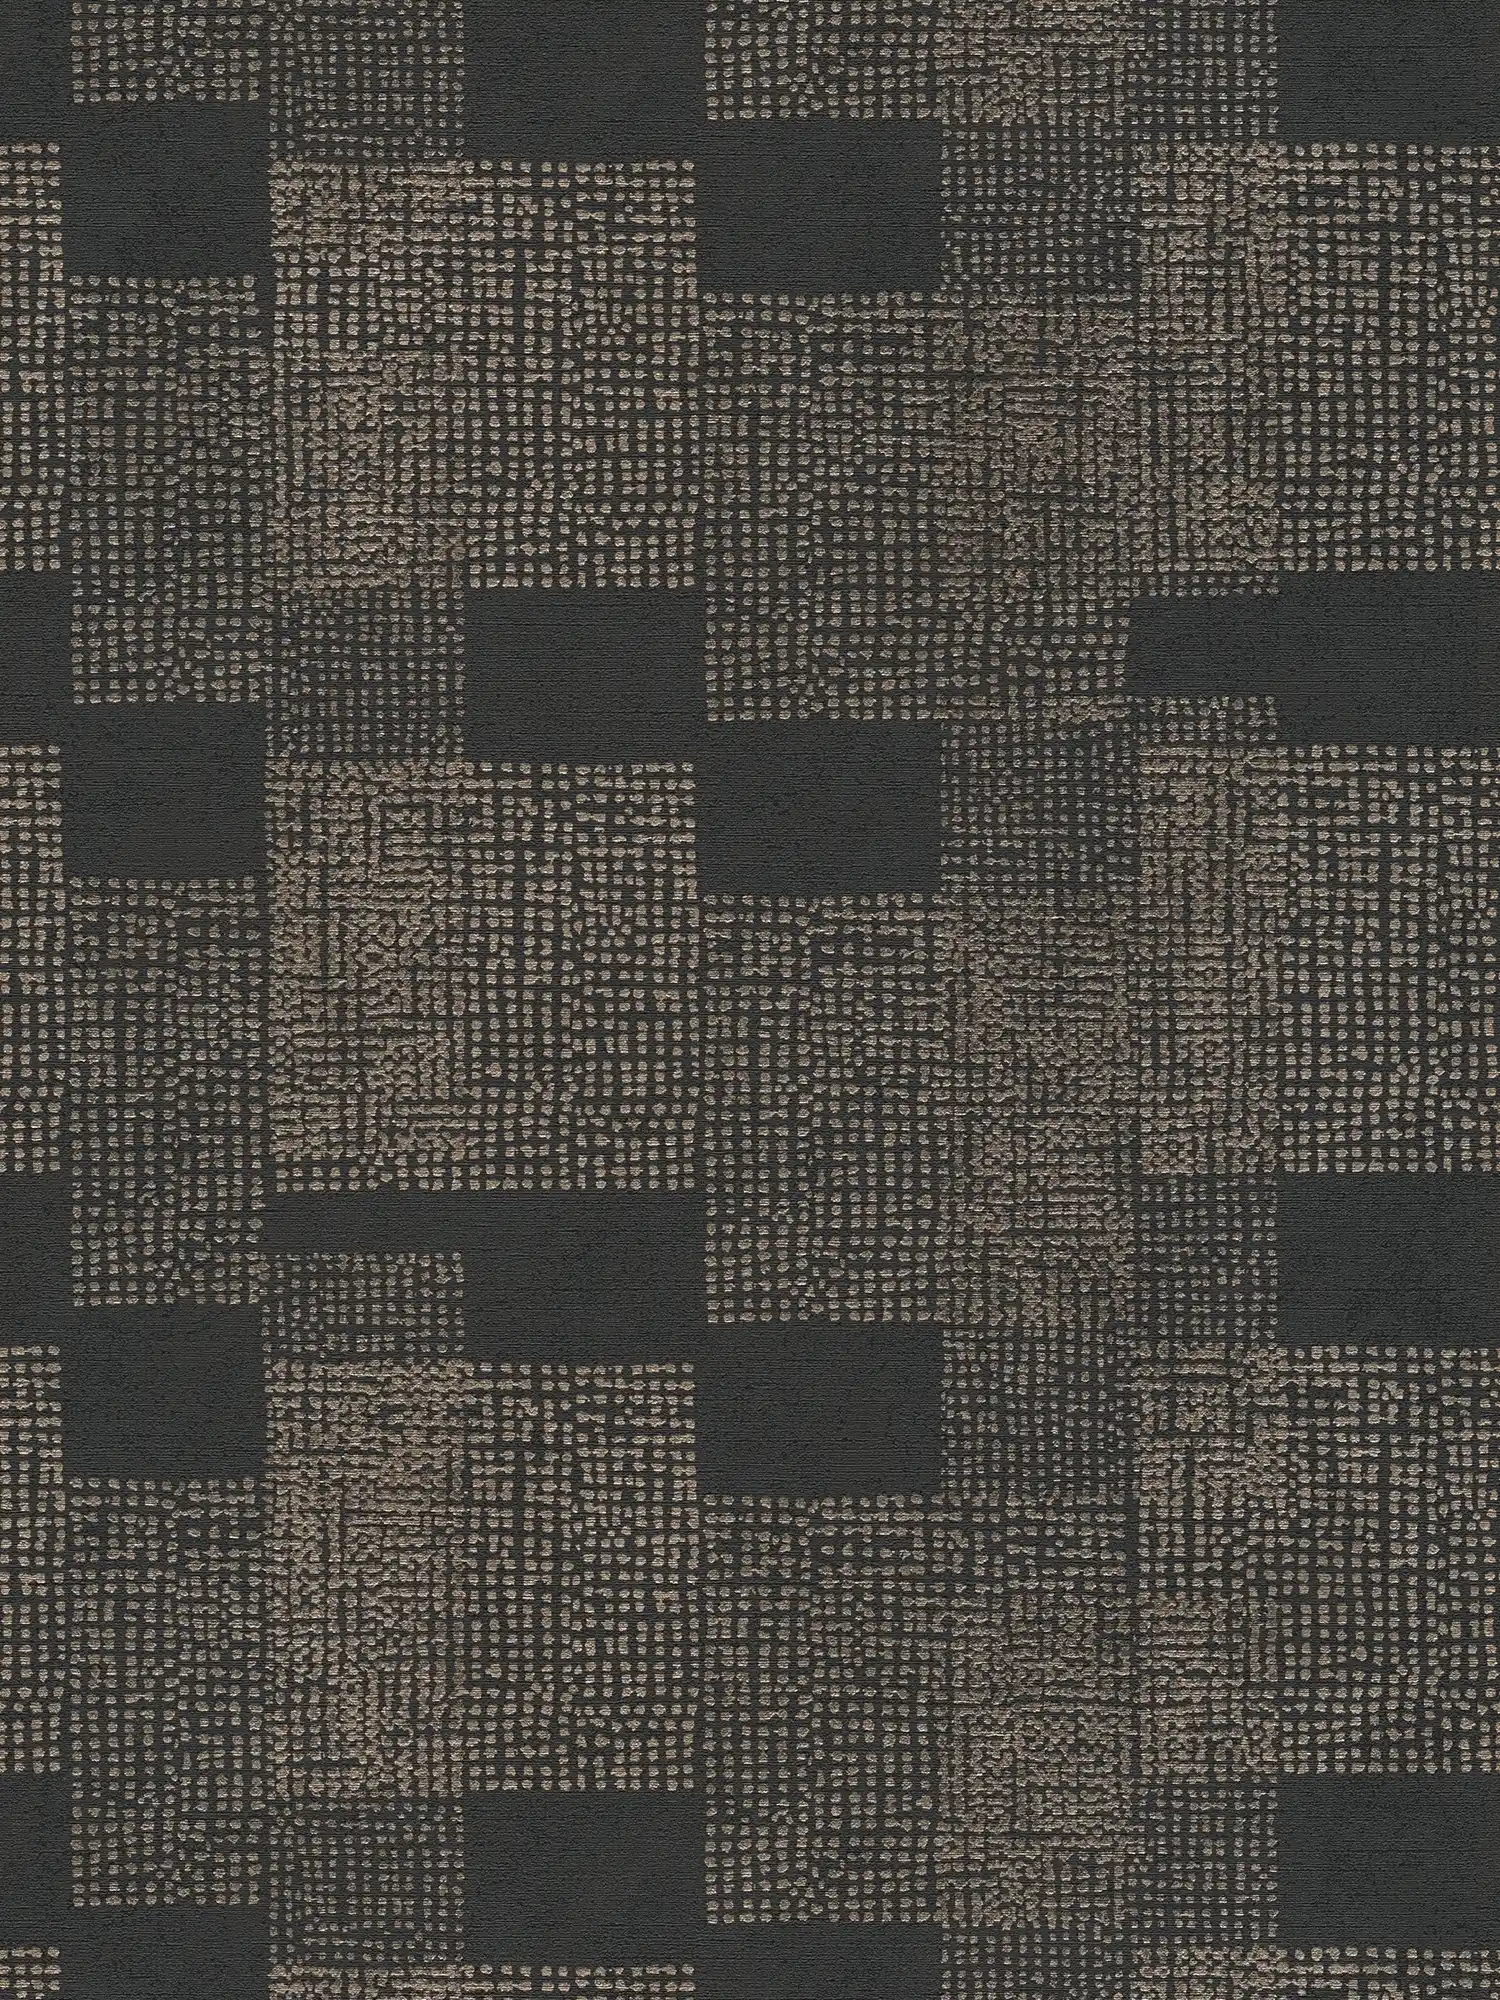 Papier peint à motifs Ethno Design - noir, gris, métallique
